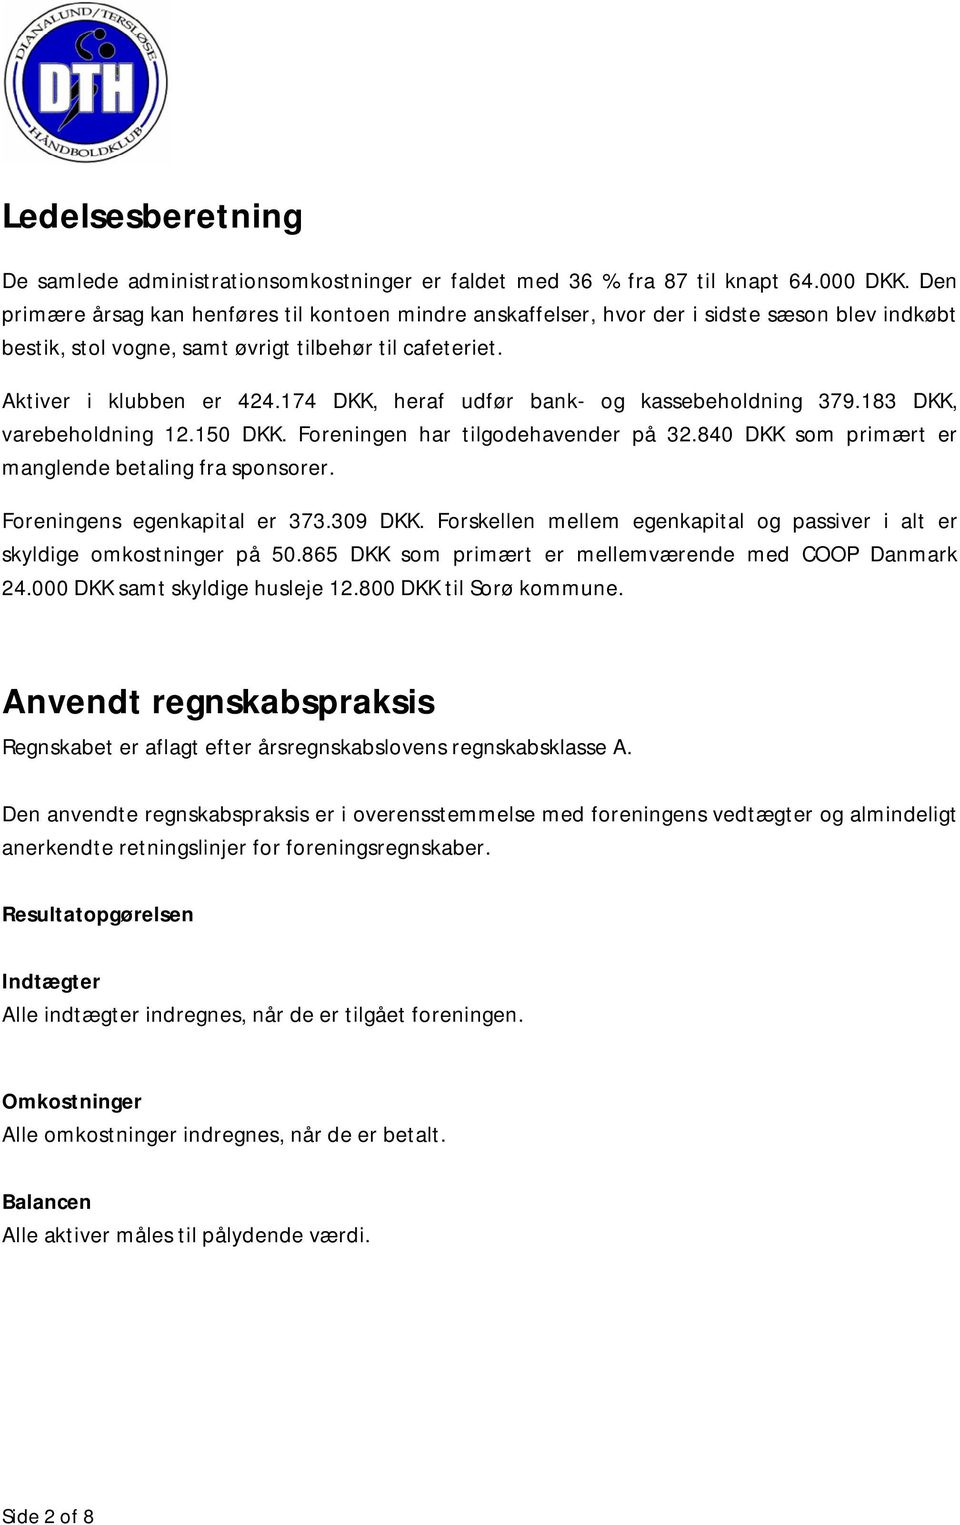 174 DKK, heraf udfør bank- og kassebeholdning 379.183 DKK, varebeholdning 12.150 DKK. Foreningen har tilgodehavender på 32.840 DKK som primært er manglende betaling fra sponsorer.